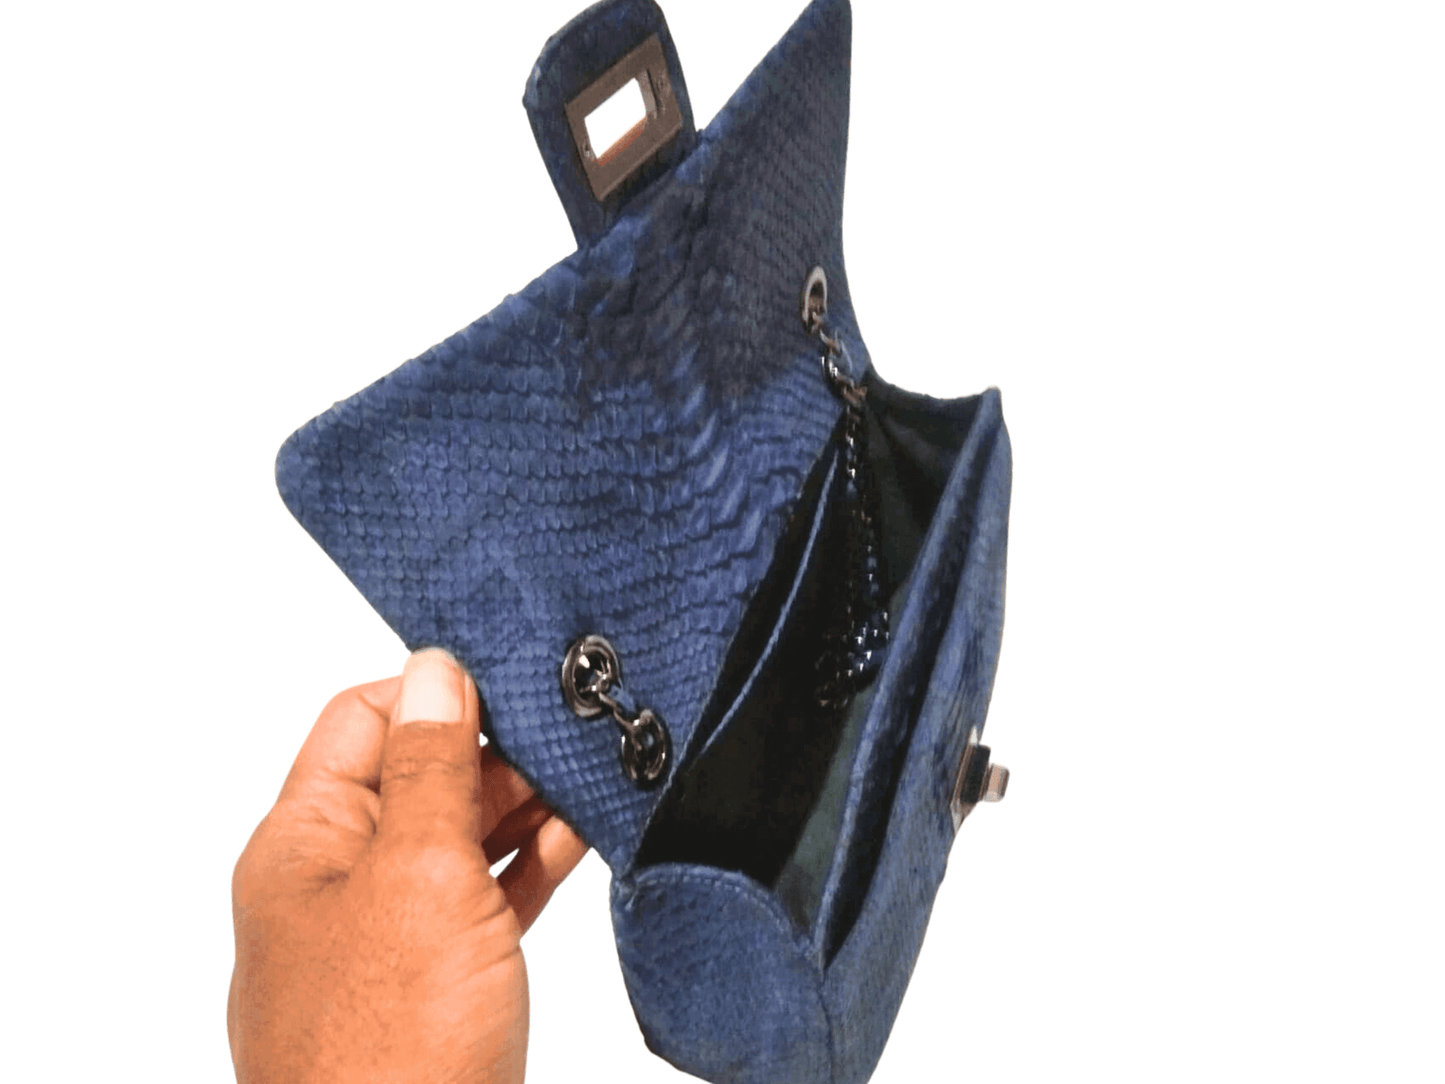 Independence Blue Snakeskin Double Flap Shoulder Bag Python Jacket by LFM Fashion